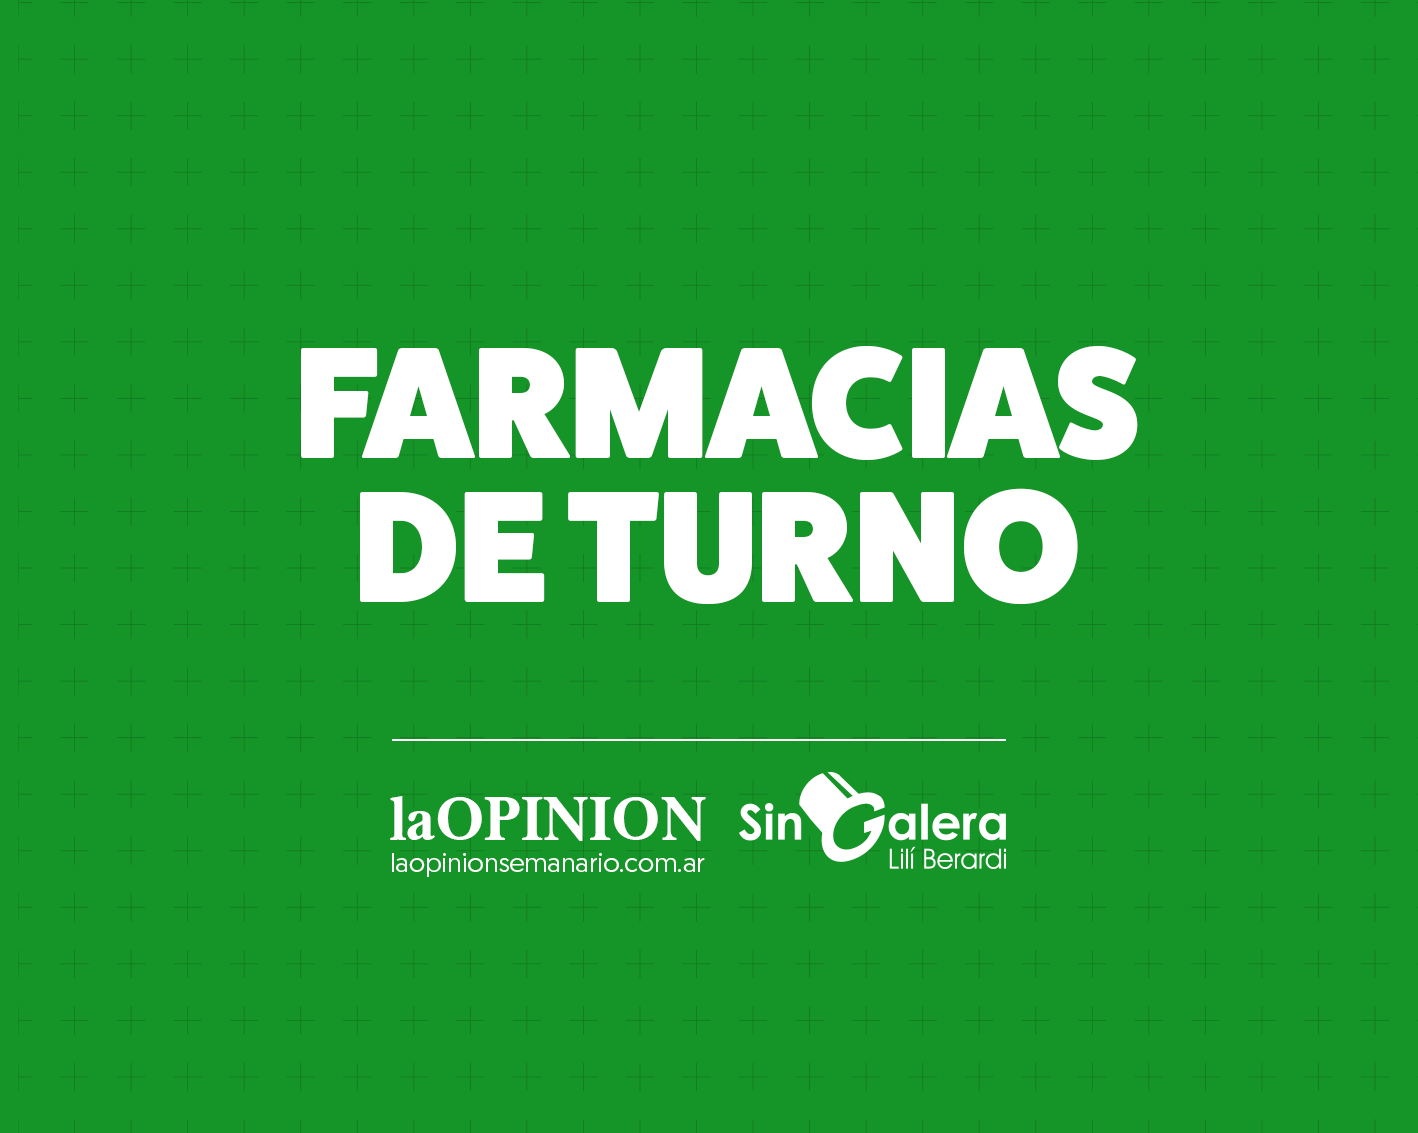 Farmacias de turno 09/04: Molina y Mauro Coliva